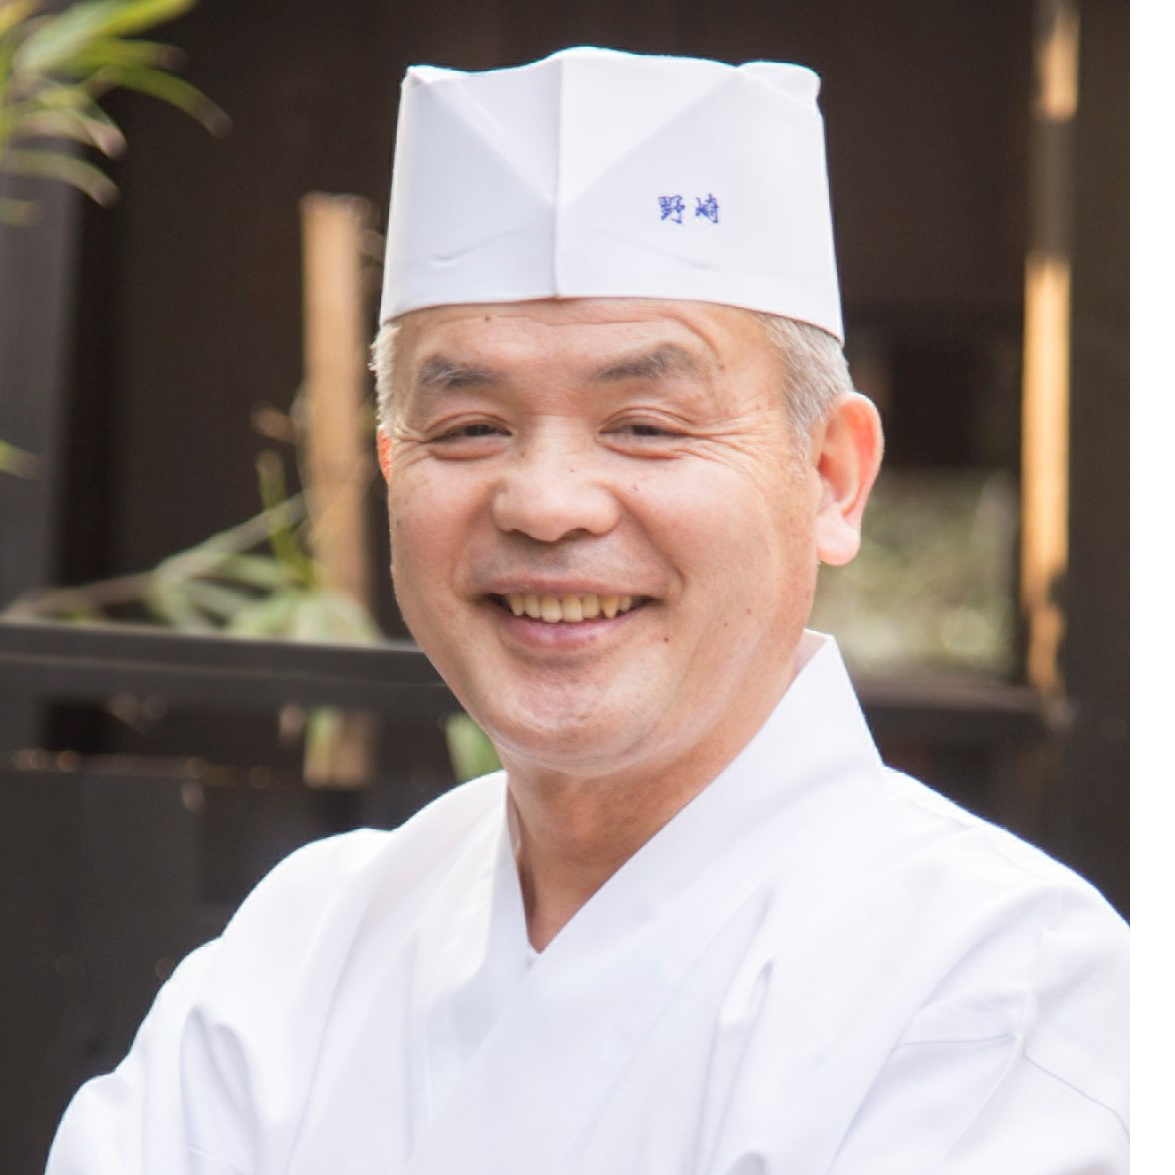 たけのこご飯 レシピ 野崎 洋光さん みんなのきょうの料理 おいしいレシピや献立を探そう